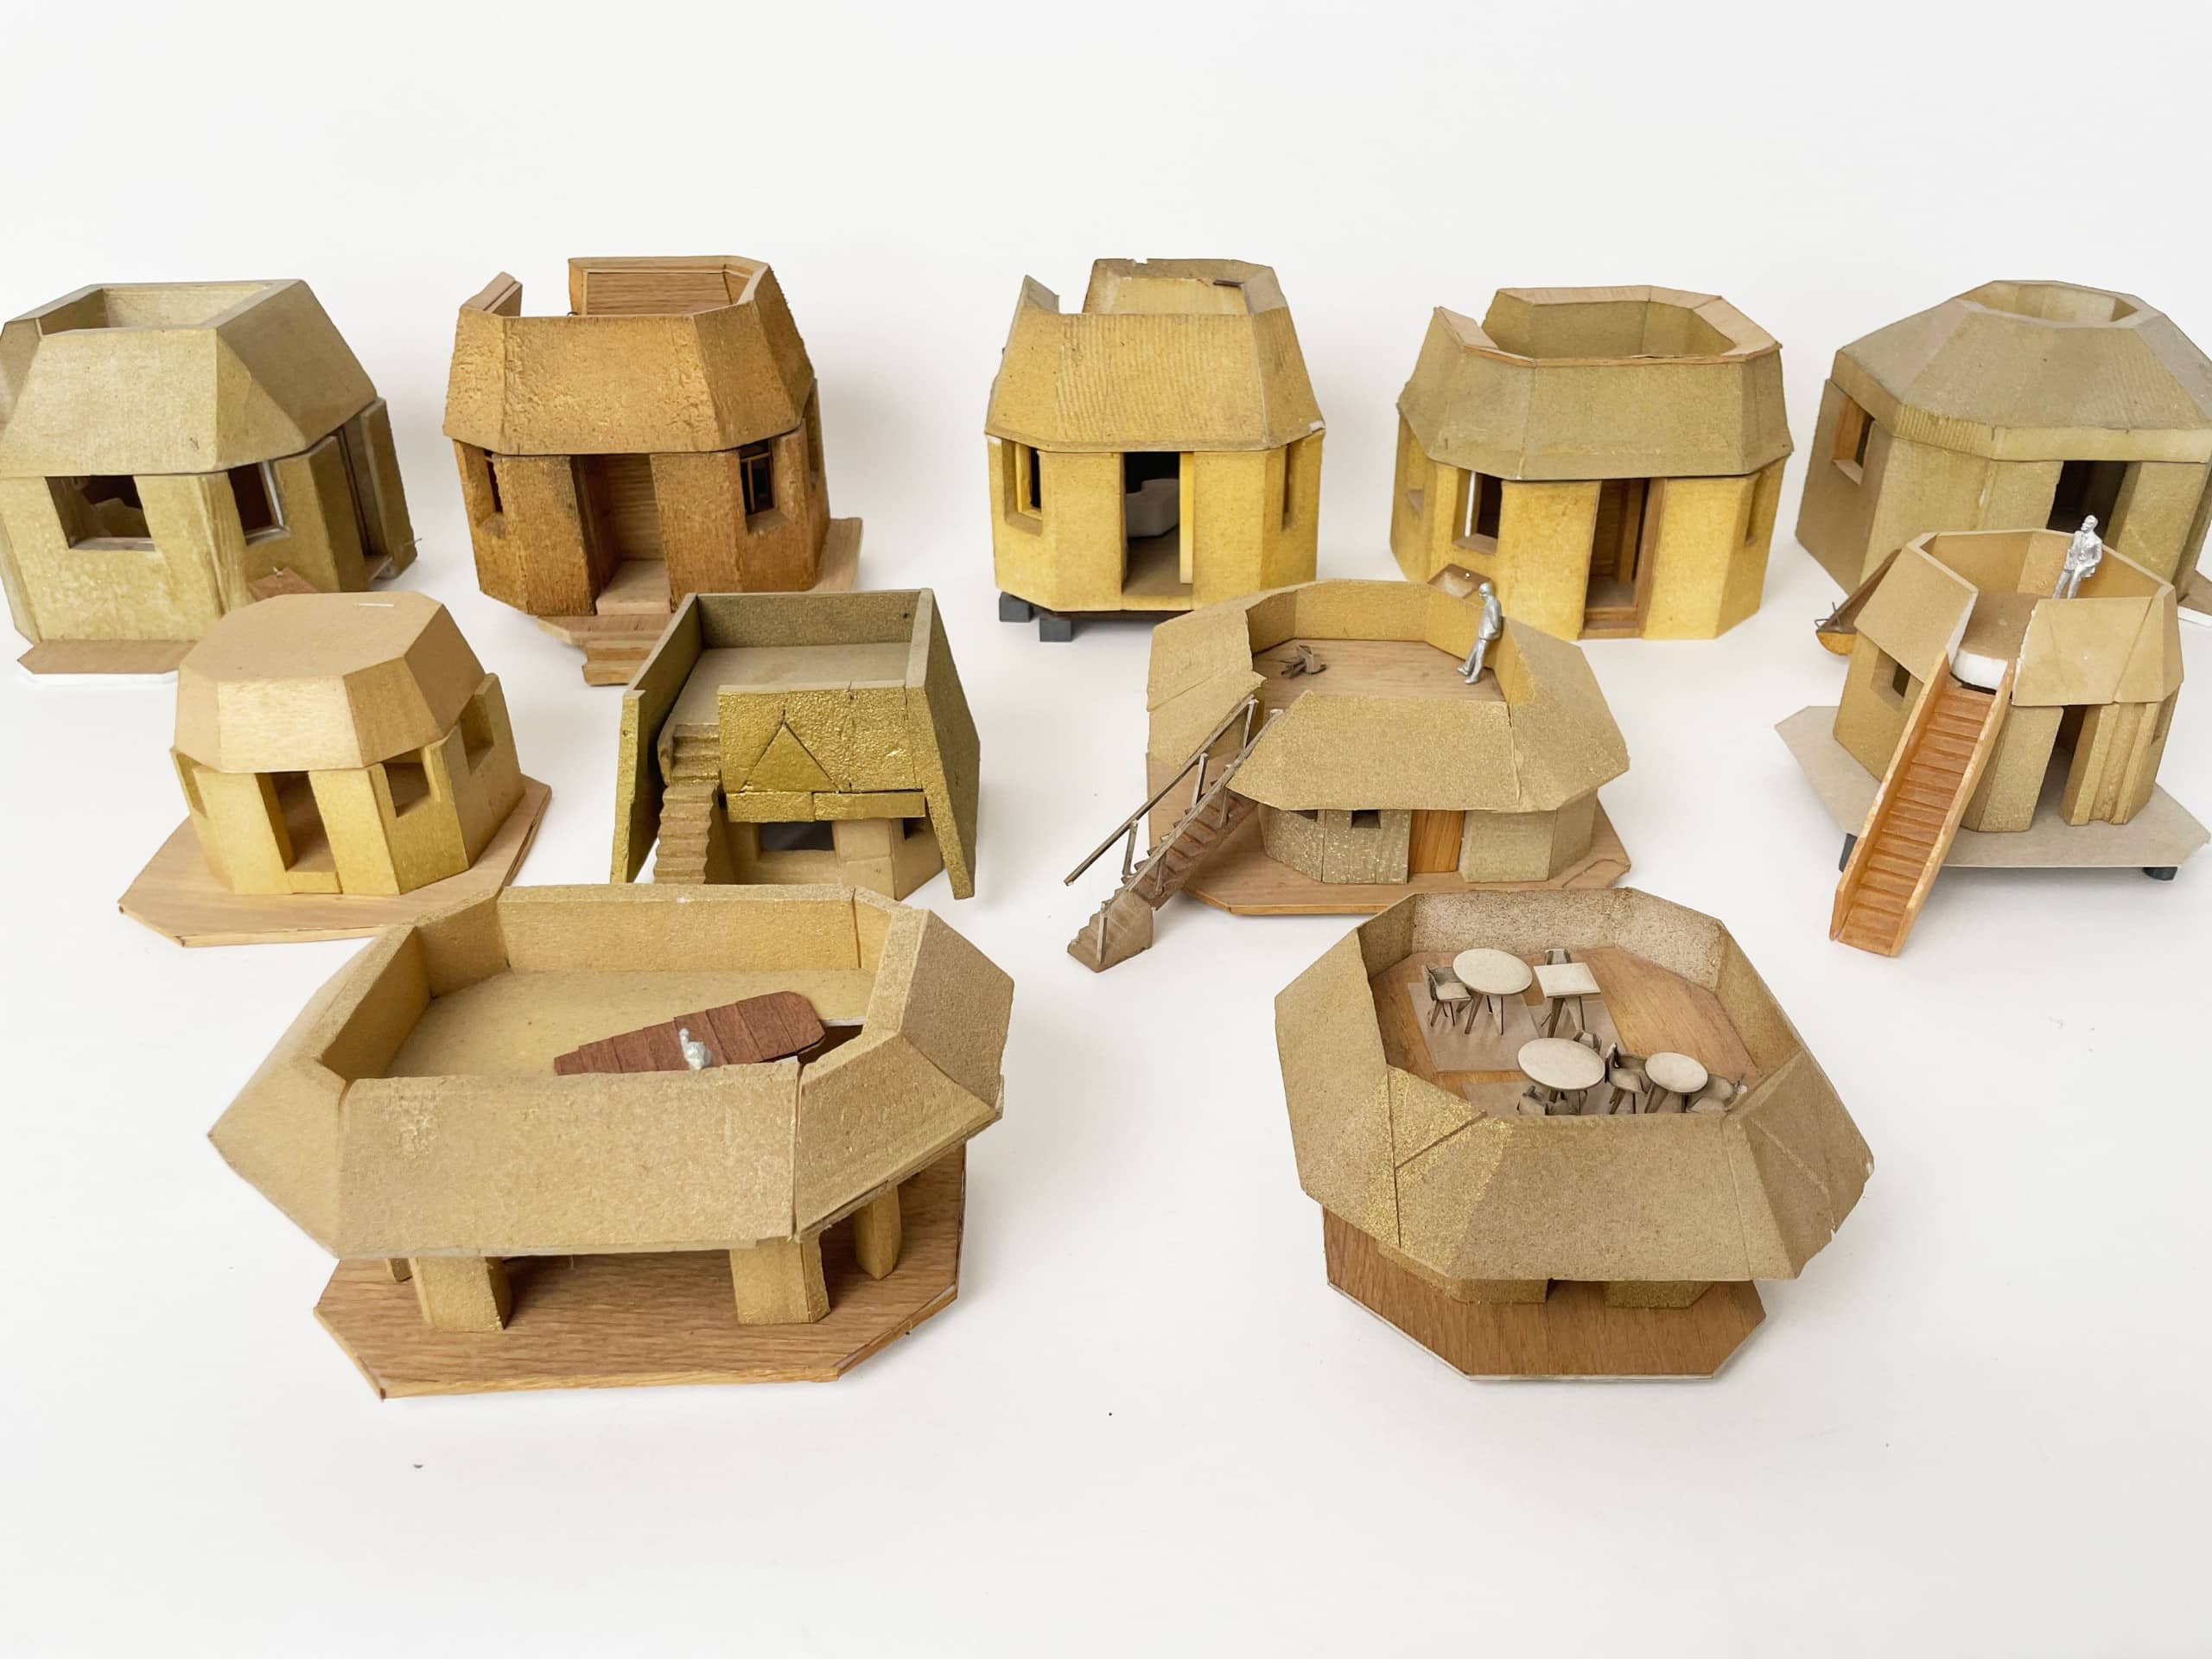 Die Ausstellung "Tsuyoshi Tane: The Garden House" erklärt den Aufbau und die Entstehungsgeschichte des besonderen Bauwerks auf dem Vitra Campus. © Atelier Tsuyoshi Tane Architects, Paris